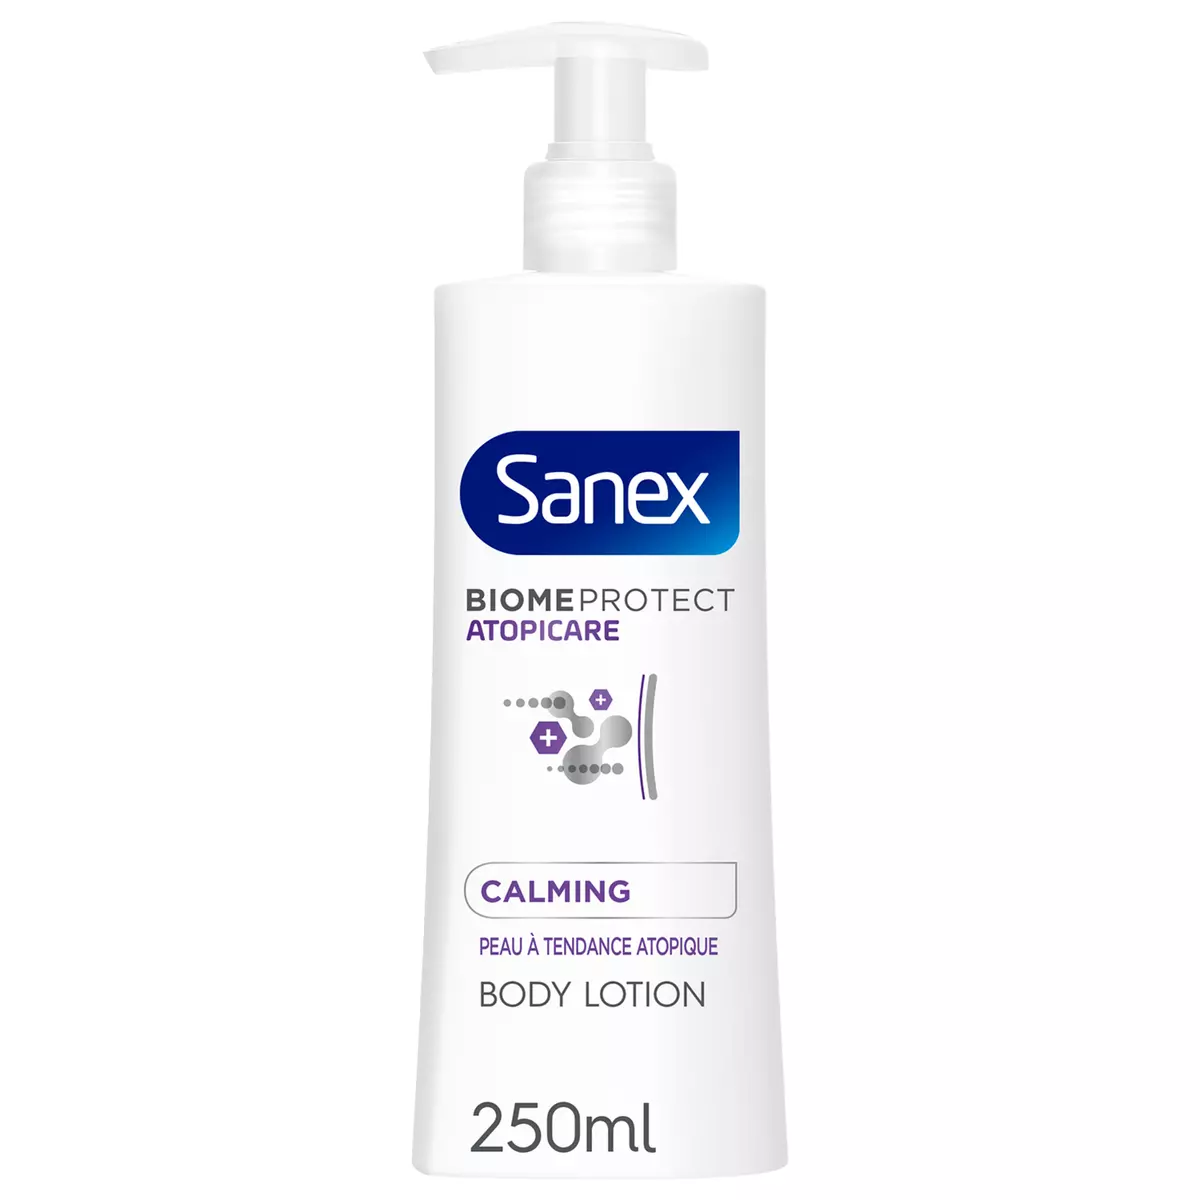 SANEX Biome protect atopicare lait pour corps peaux à tendance atopique 250ml